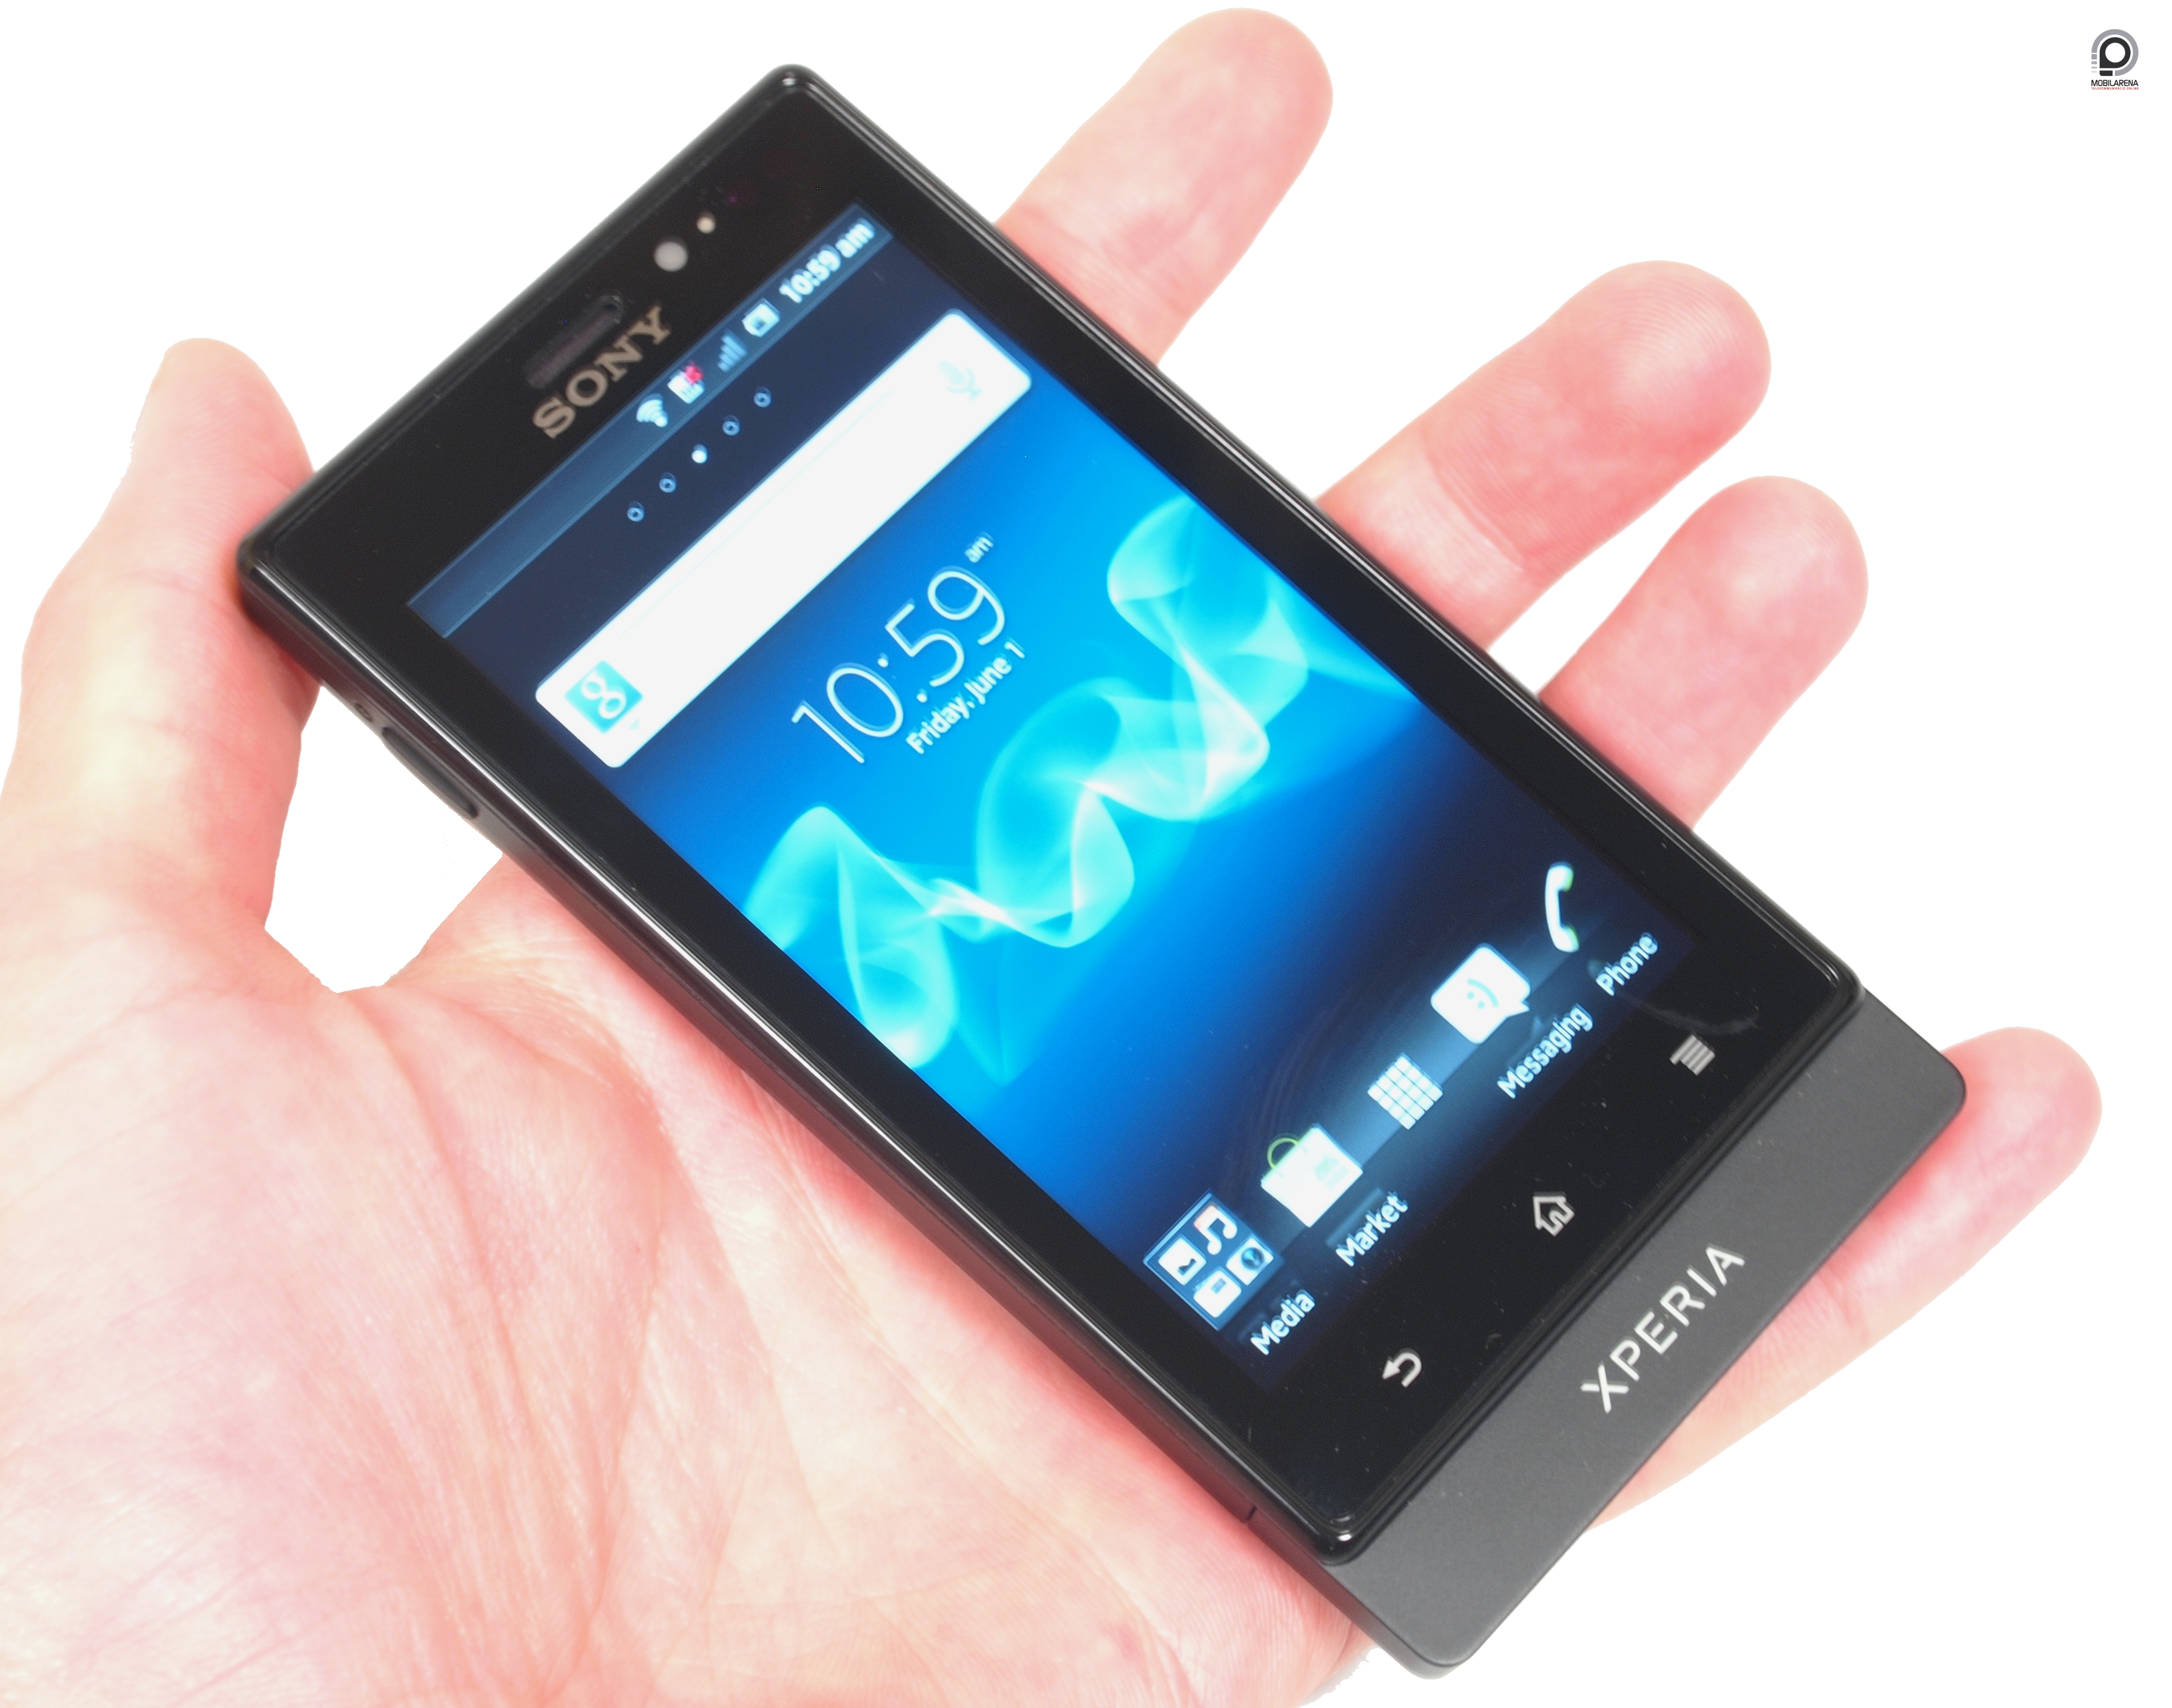 Sony Xperia sola - kezeket a magasba - Mobilarena Okostelefon teszt -  Nyomtatóbarát verzió